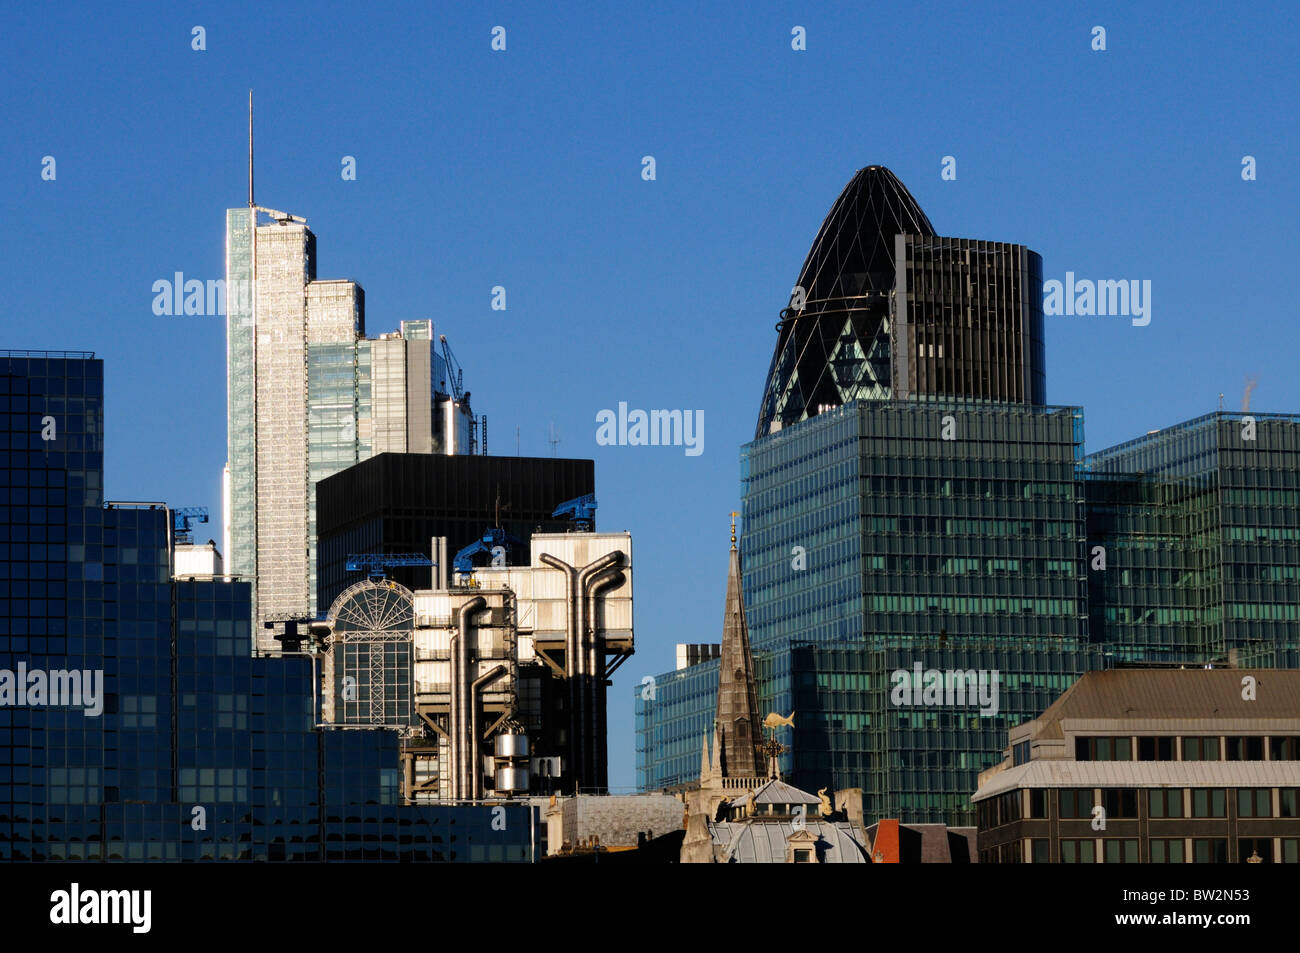 Résumé détail architectural de bâtiments Ville de London, London, England, UK Banque D'Images